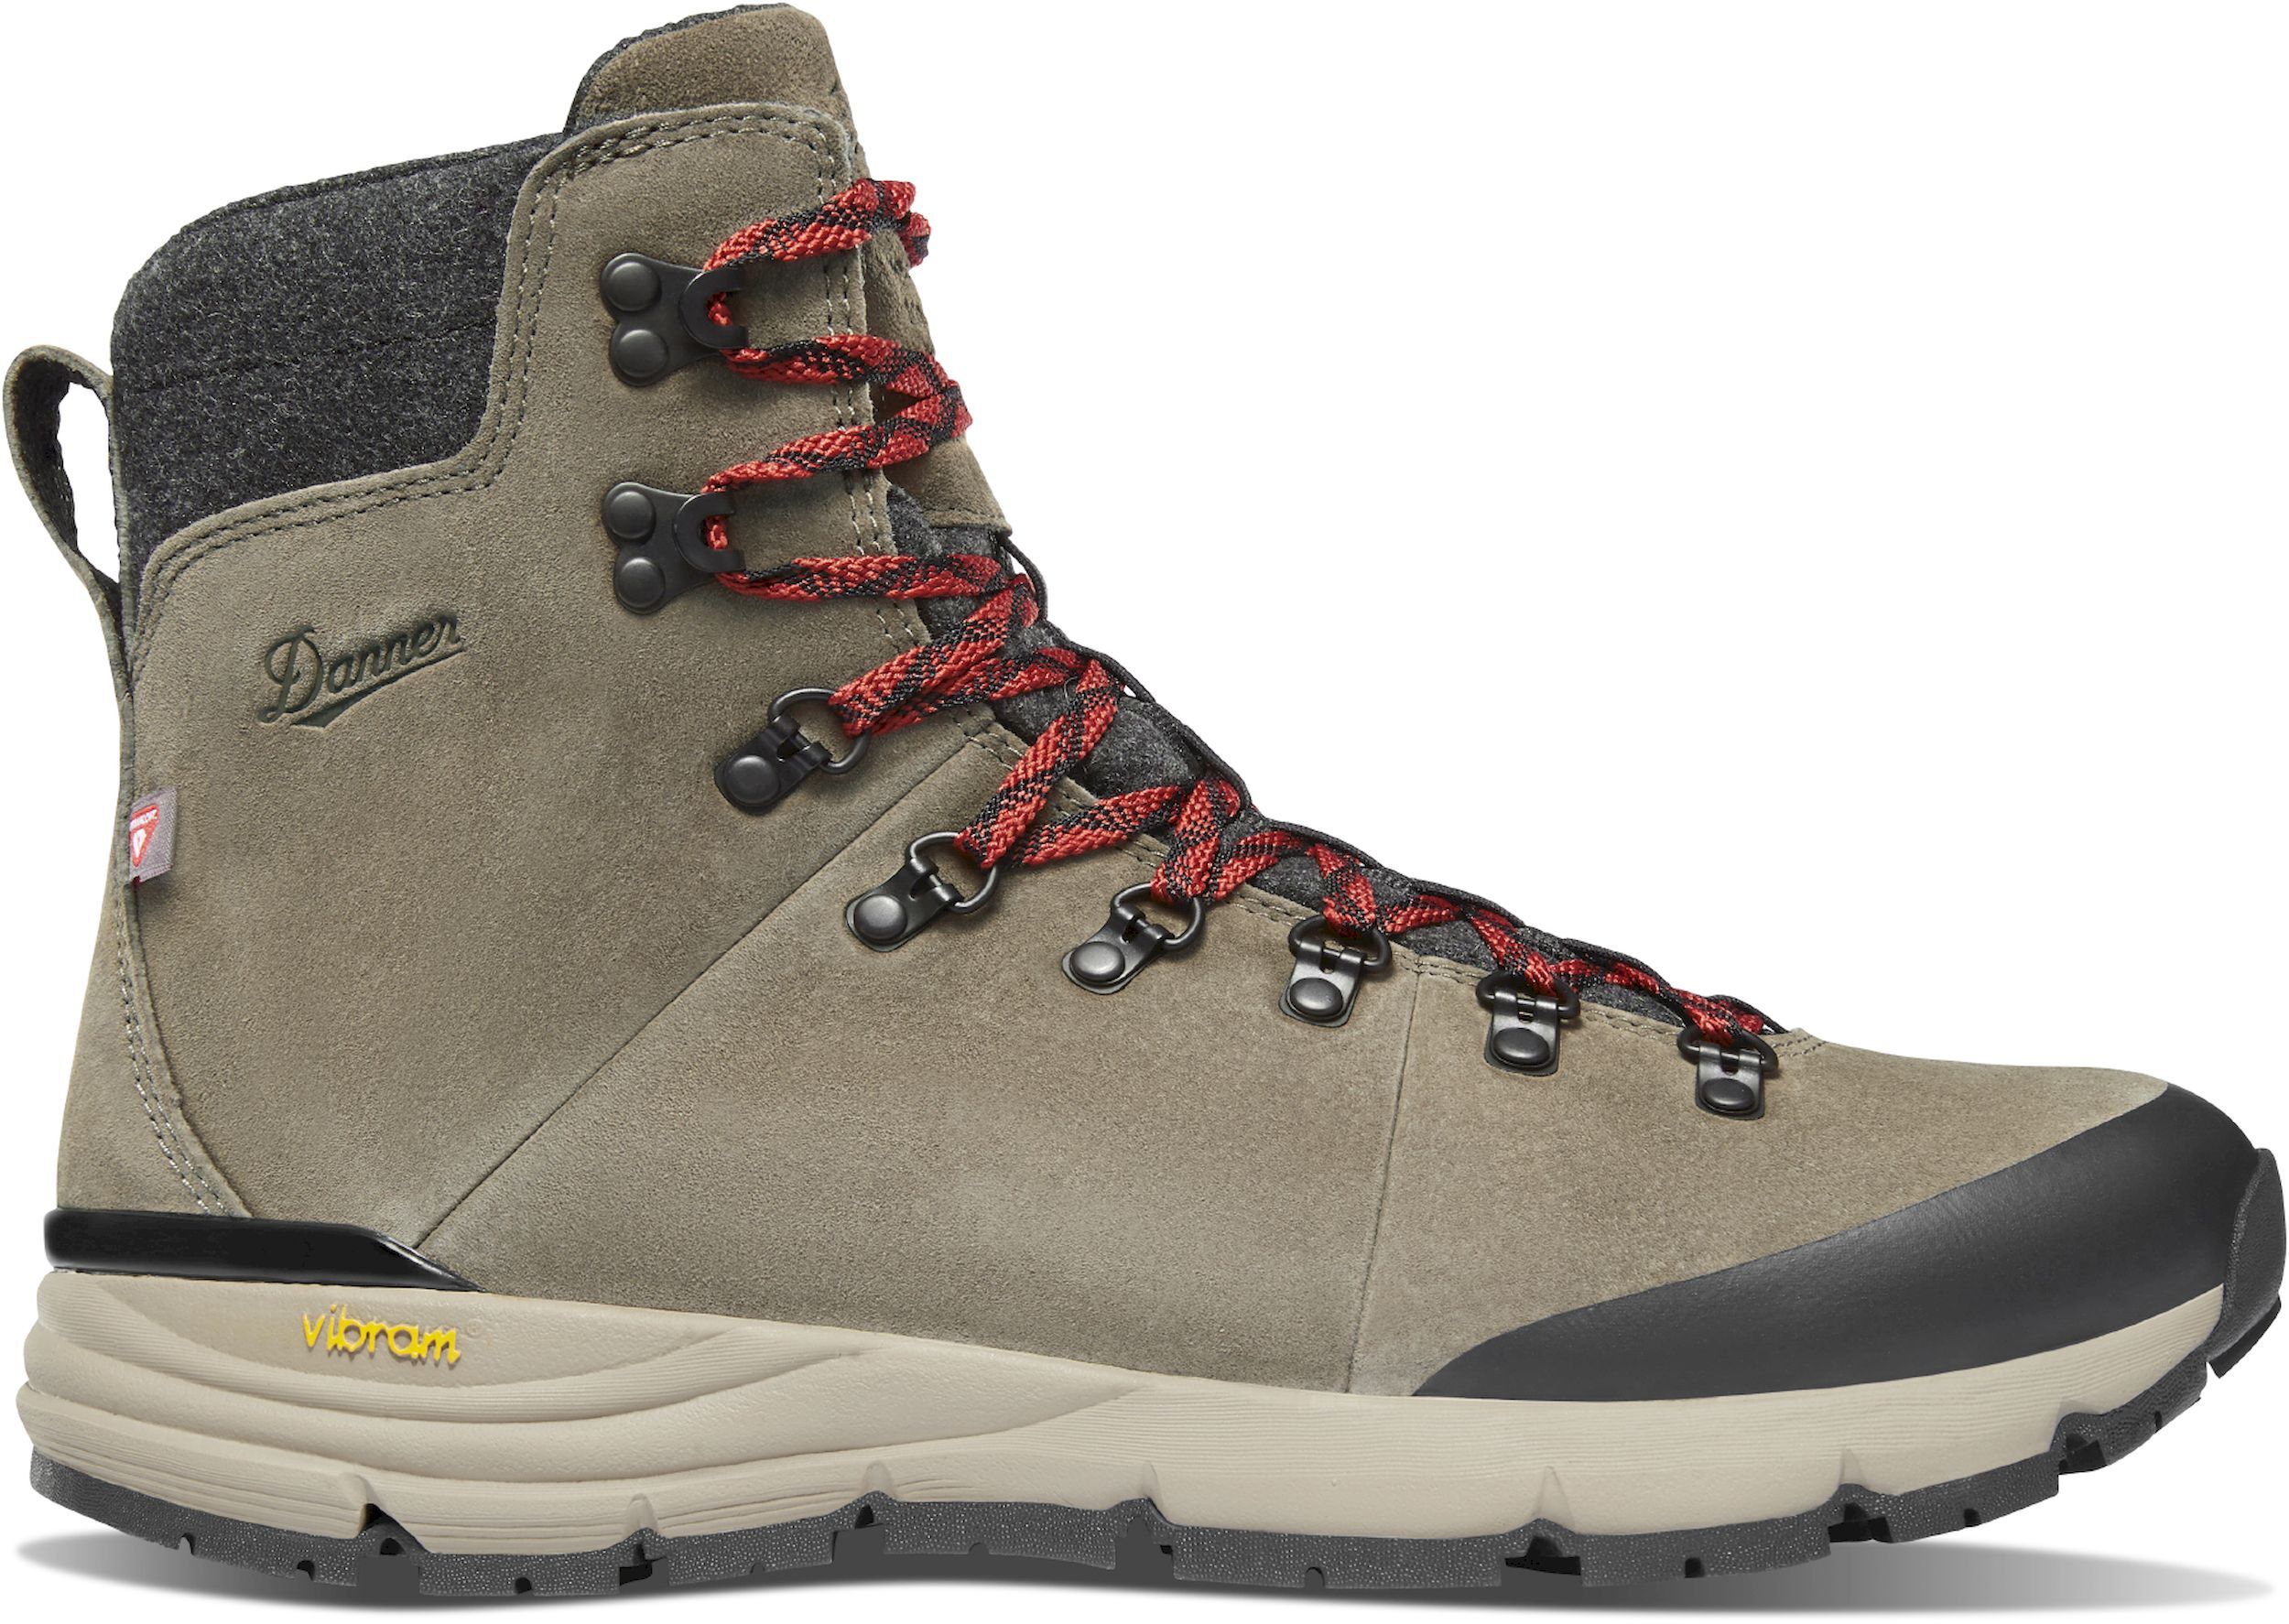 Danner Arctic 600 Side-Zip 7" 200G - Hiking shoes - Men's